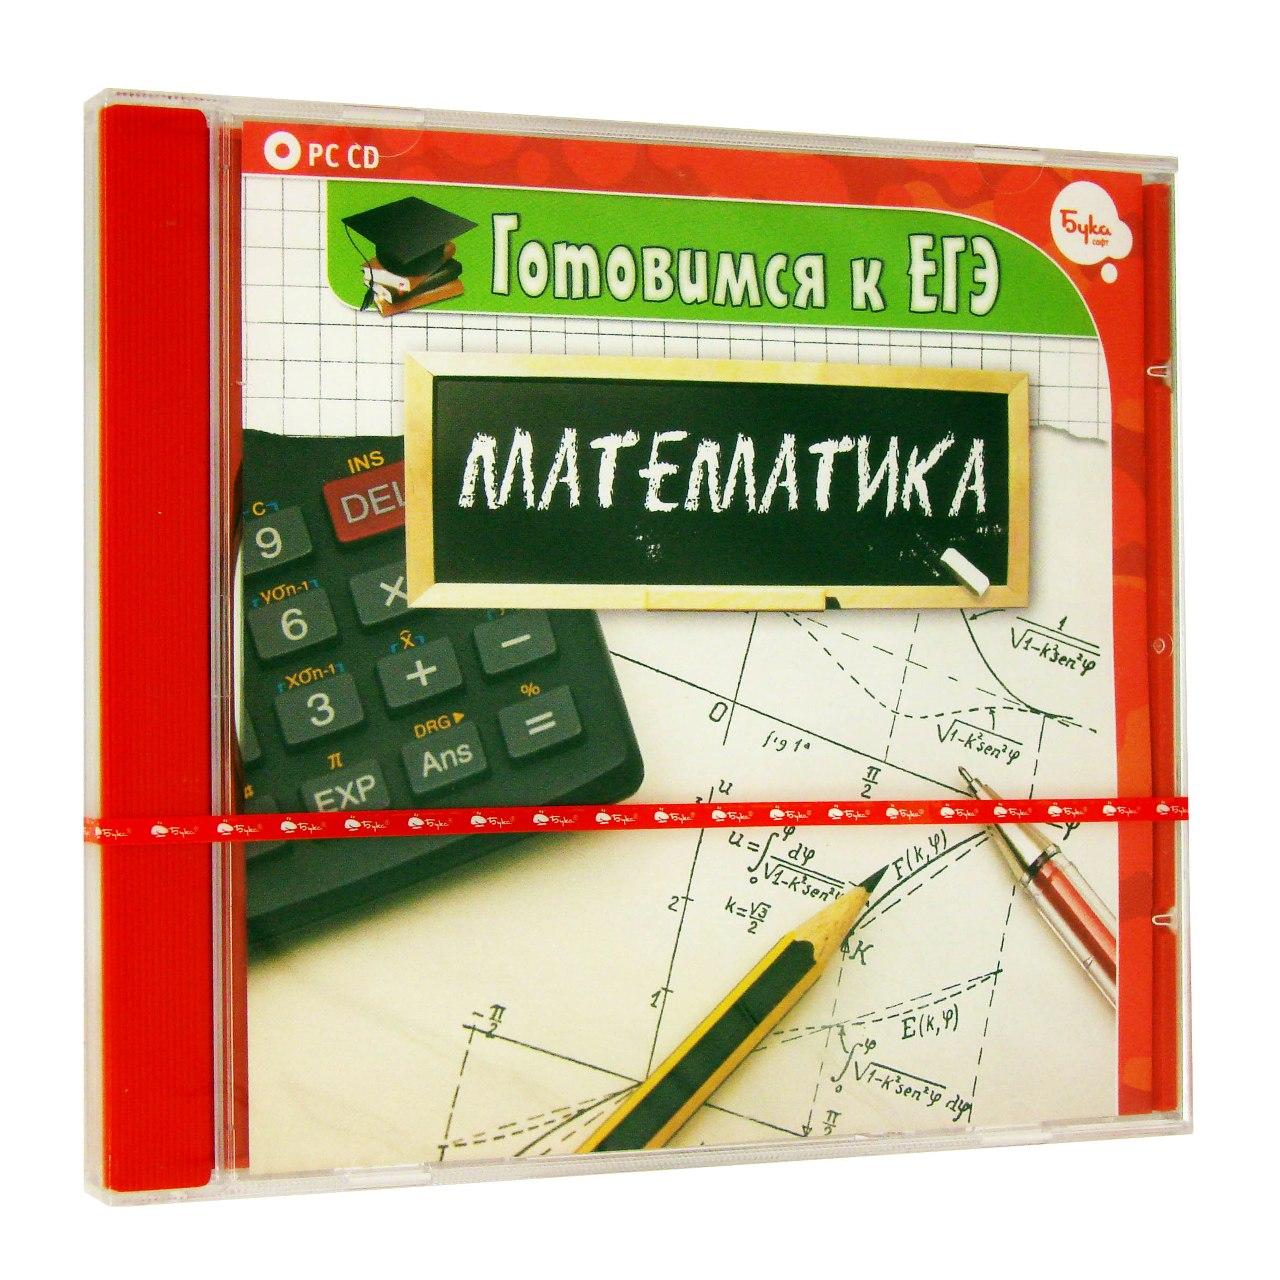 Компьютерный компакт-диск Готовимся к ЕГЭ. Математика (ПК), фирма "Бука", 1CD